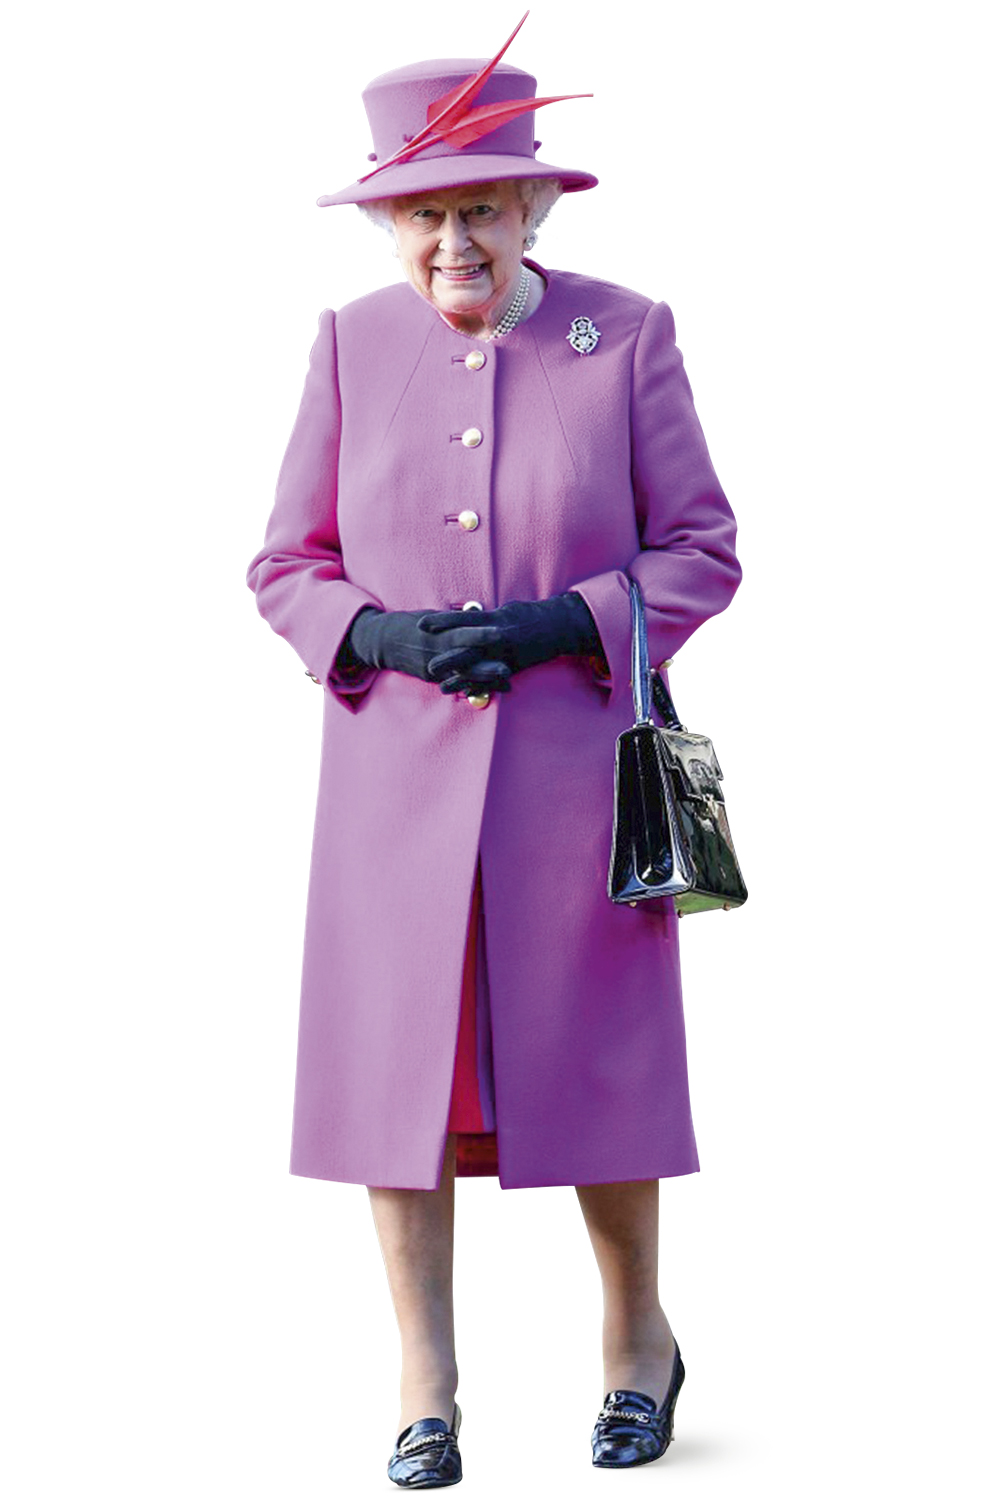 FIGURINO REAL - Elizabeth II e seus looks: alegria para os súditos -